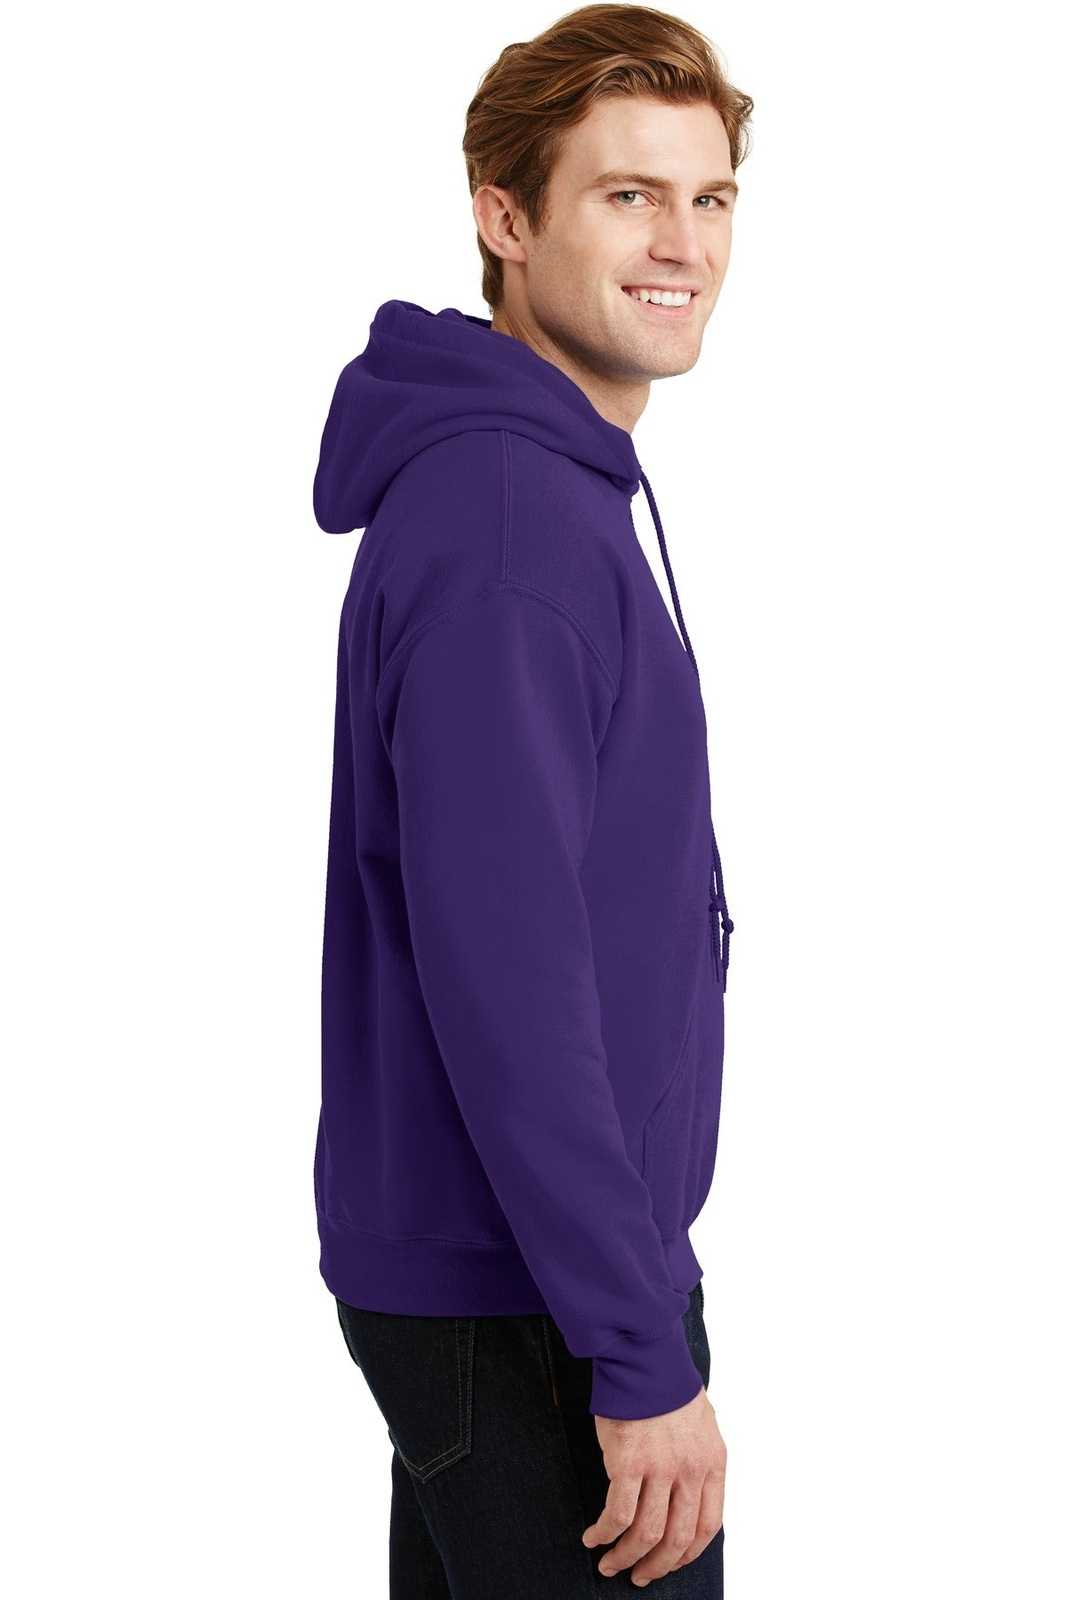 Gildan 18500 Heavy Blend Hooded Sweatshirt - Purple - HIT a Double